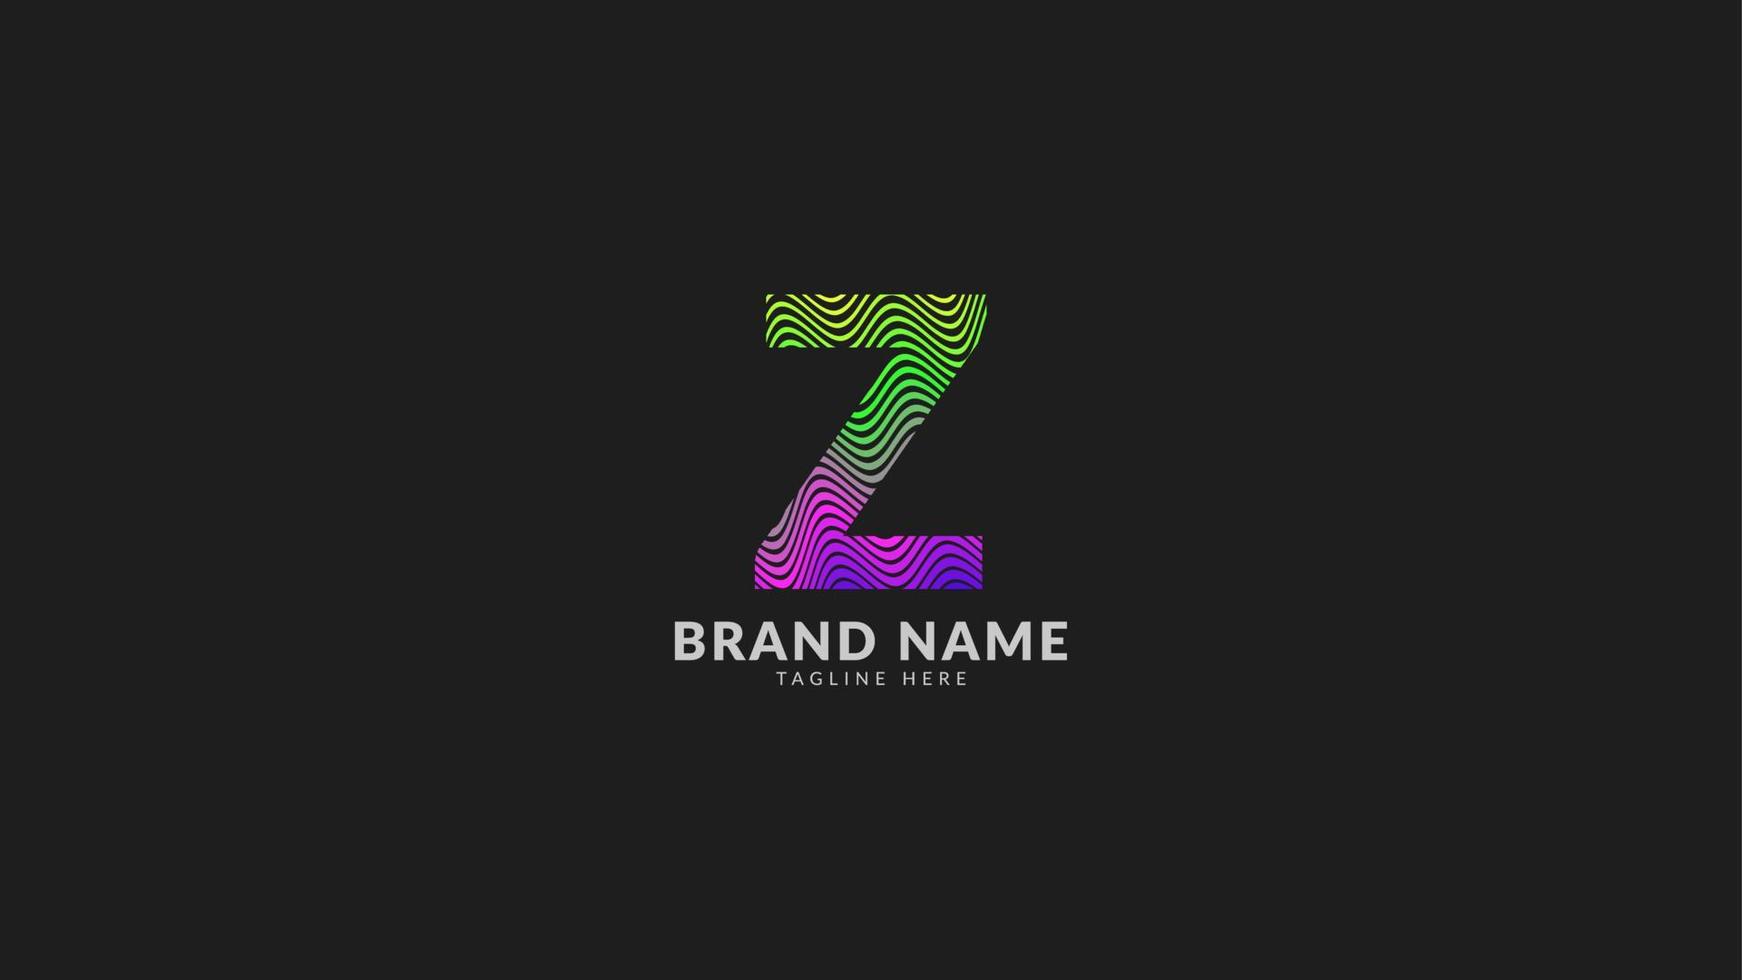 lettera z logo colorato astratto arcobaleno ondulato per il marchio aziendale creativo e innovativo. elemento di design vettoriale di stampa o web